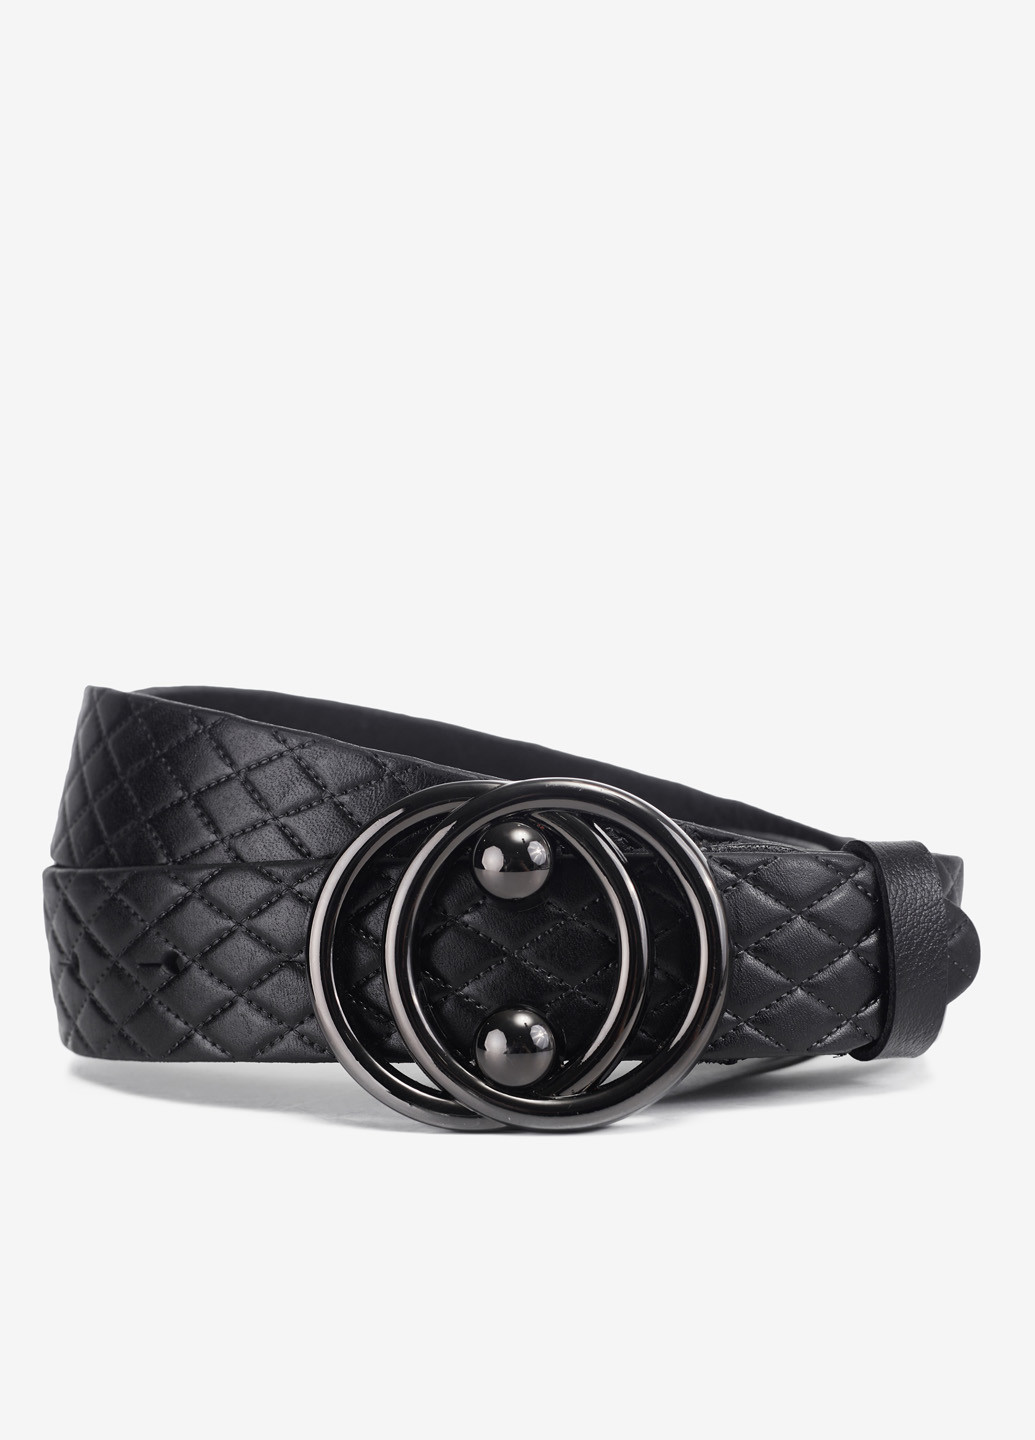 Ремень женский кожаный классический брючный 3 см InBag InBag Shop (269692957)